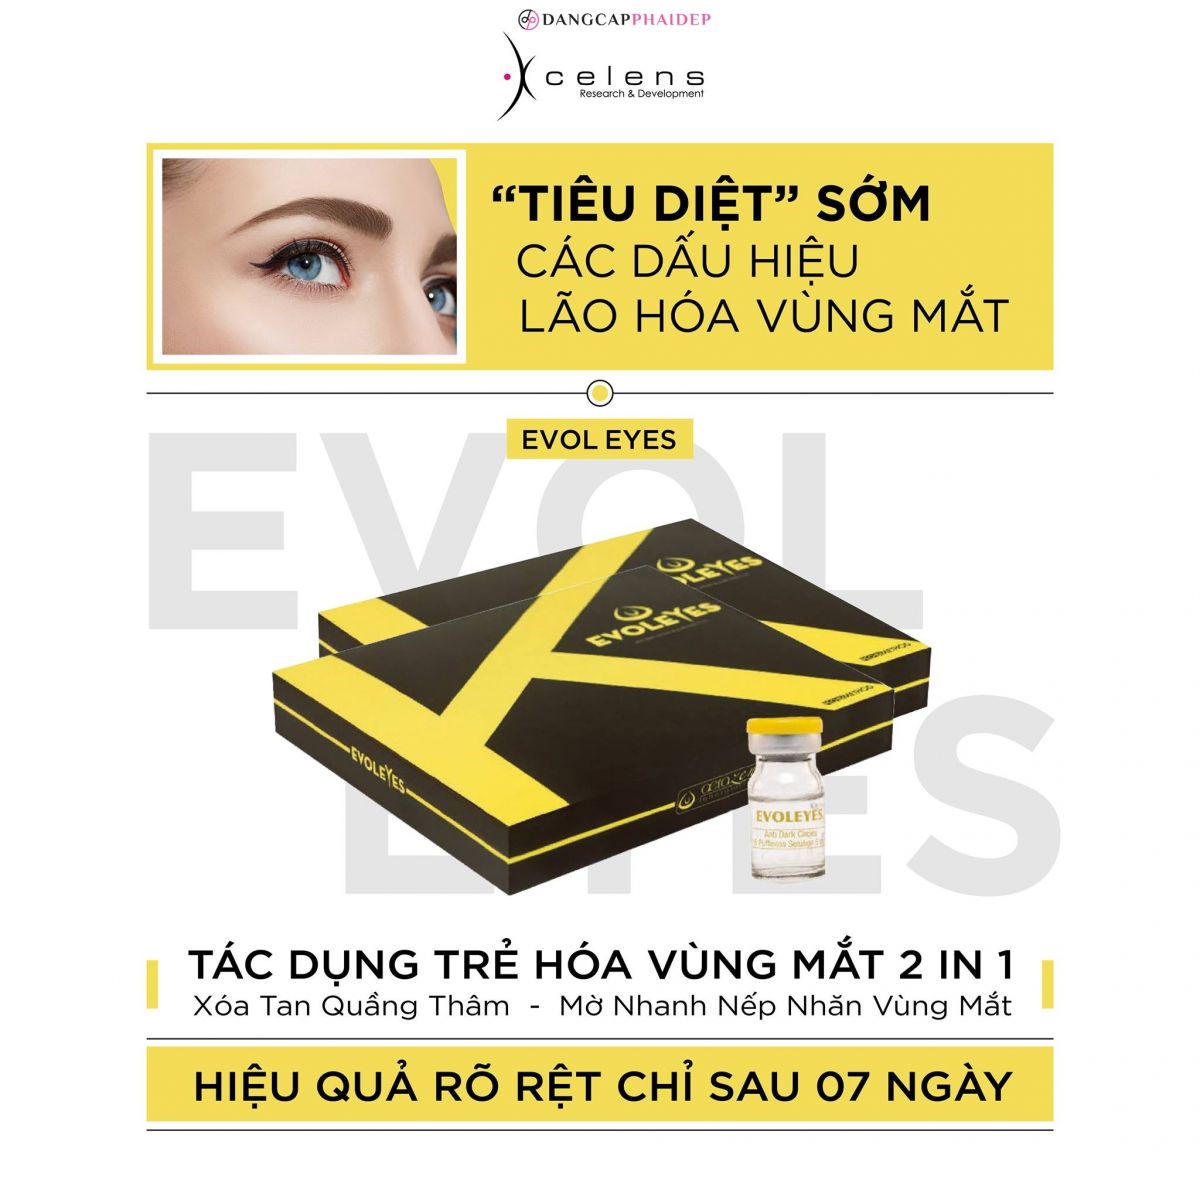 Xcelens Evol Eyes thích hợp cho những ai muốn sở hữu vùng mắt sáng mịn.